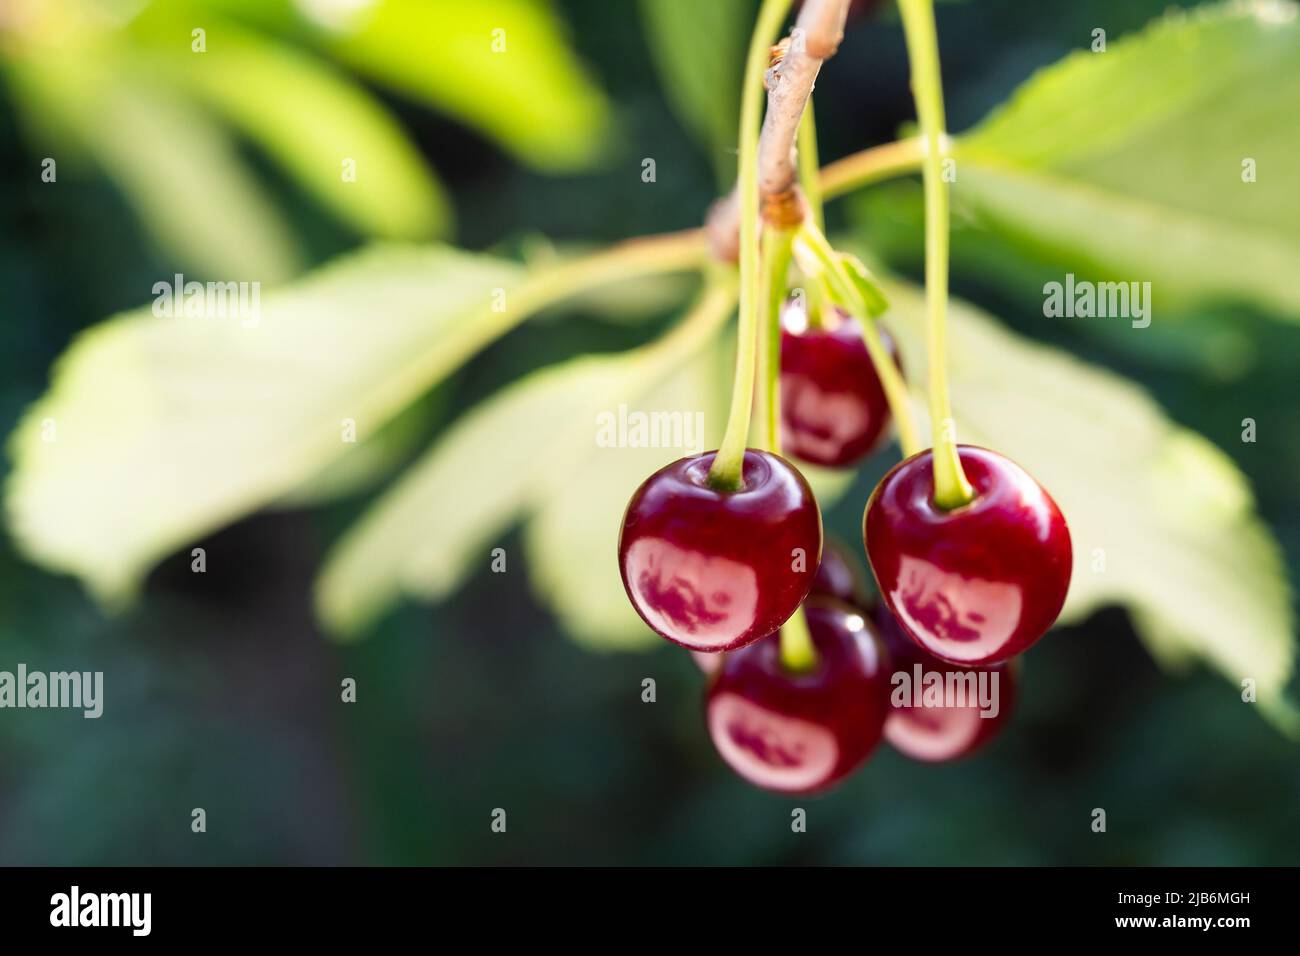 Detail of ripe red cherries on cherry tree Stock Photo